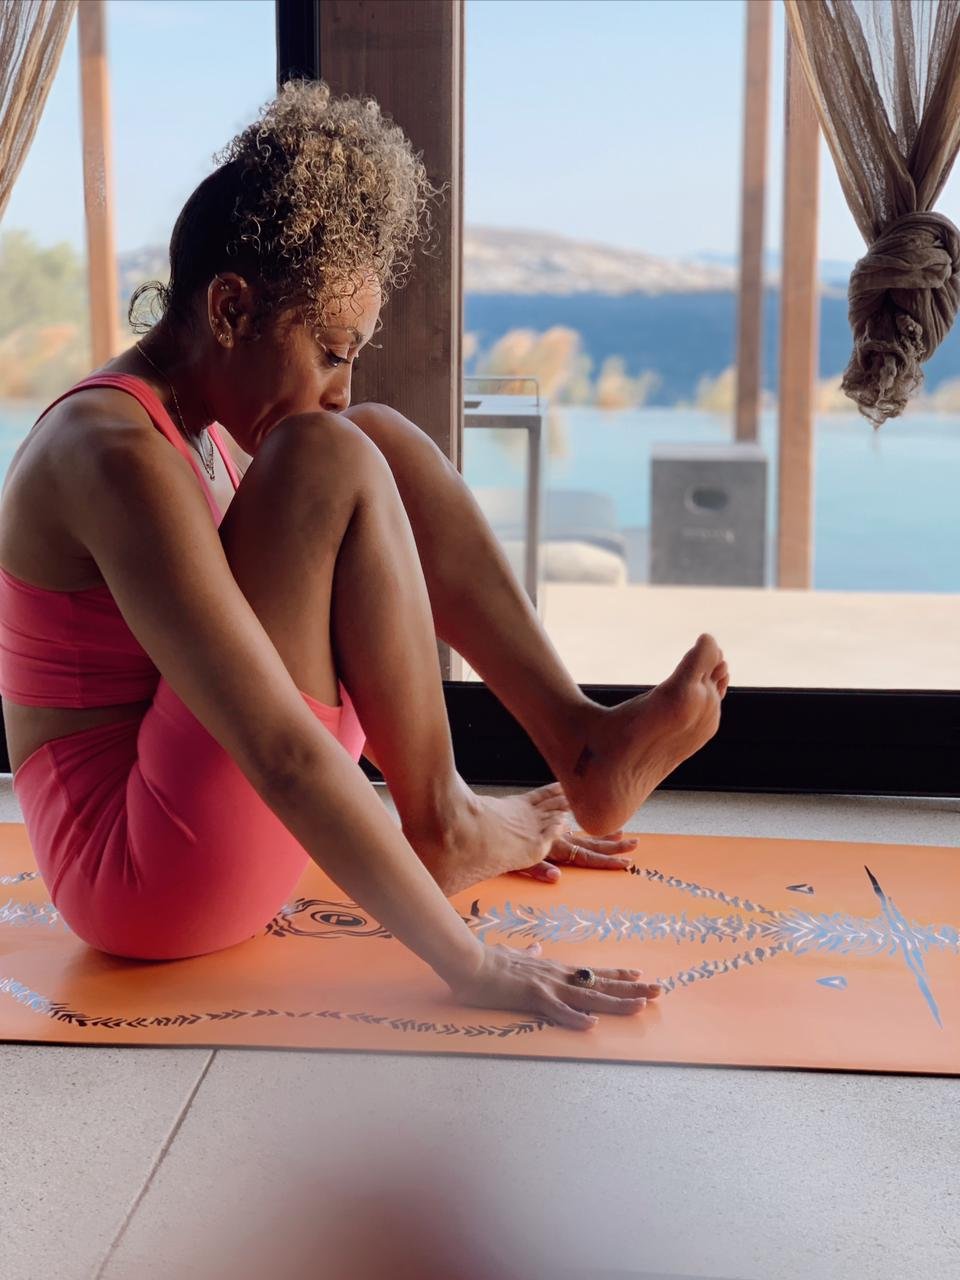 Ashtanga Yoga Puerto Rico on Instagram: Join @claravigil for